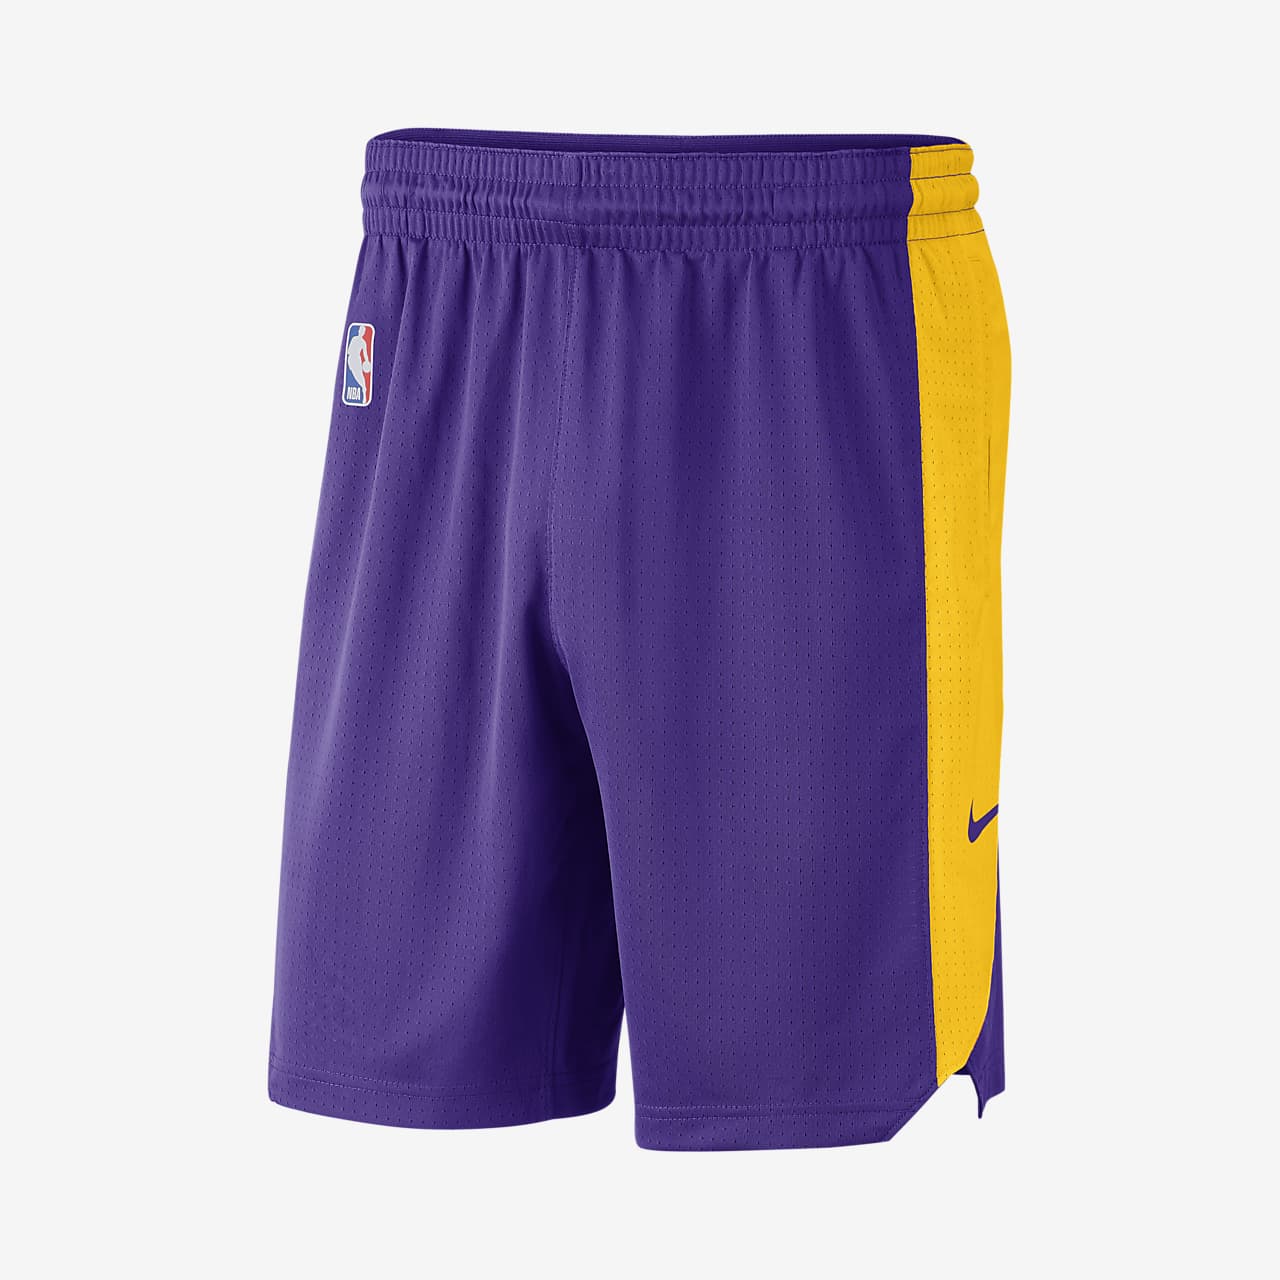 洛杉矶湖人队 Nike 男子 NBA 短裤